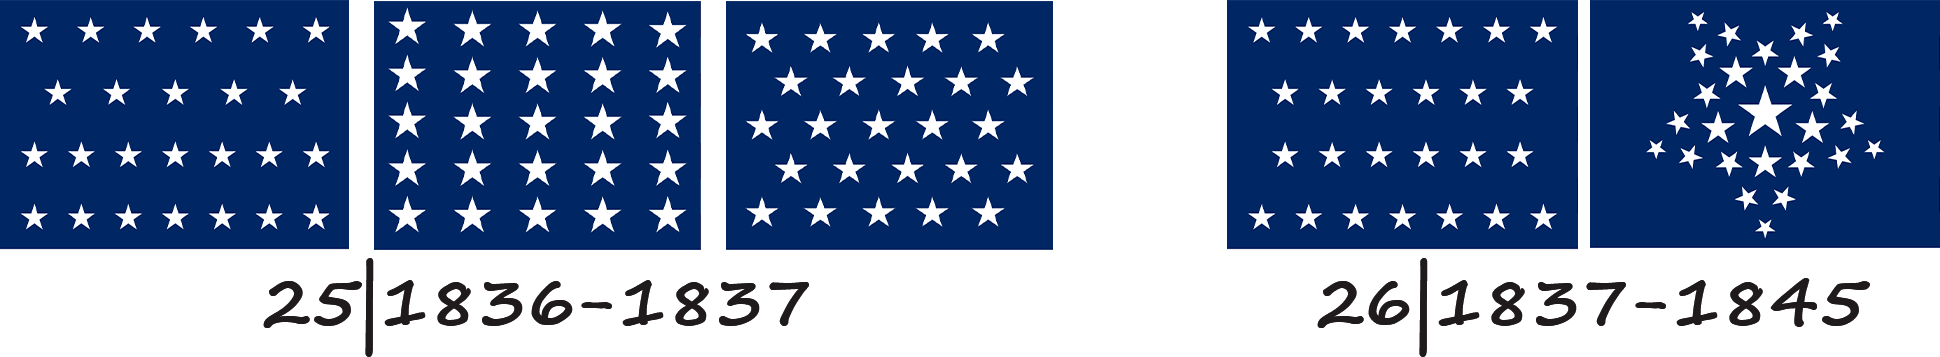 Прапор Сполучених Штатів Америки з 25 та 26 зірками